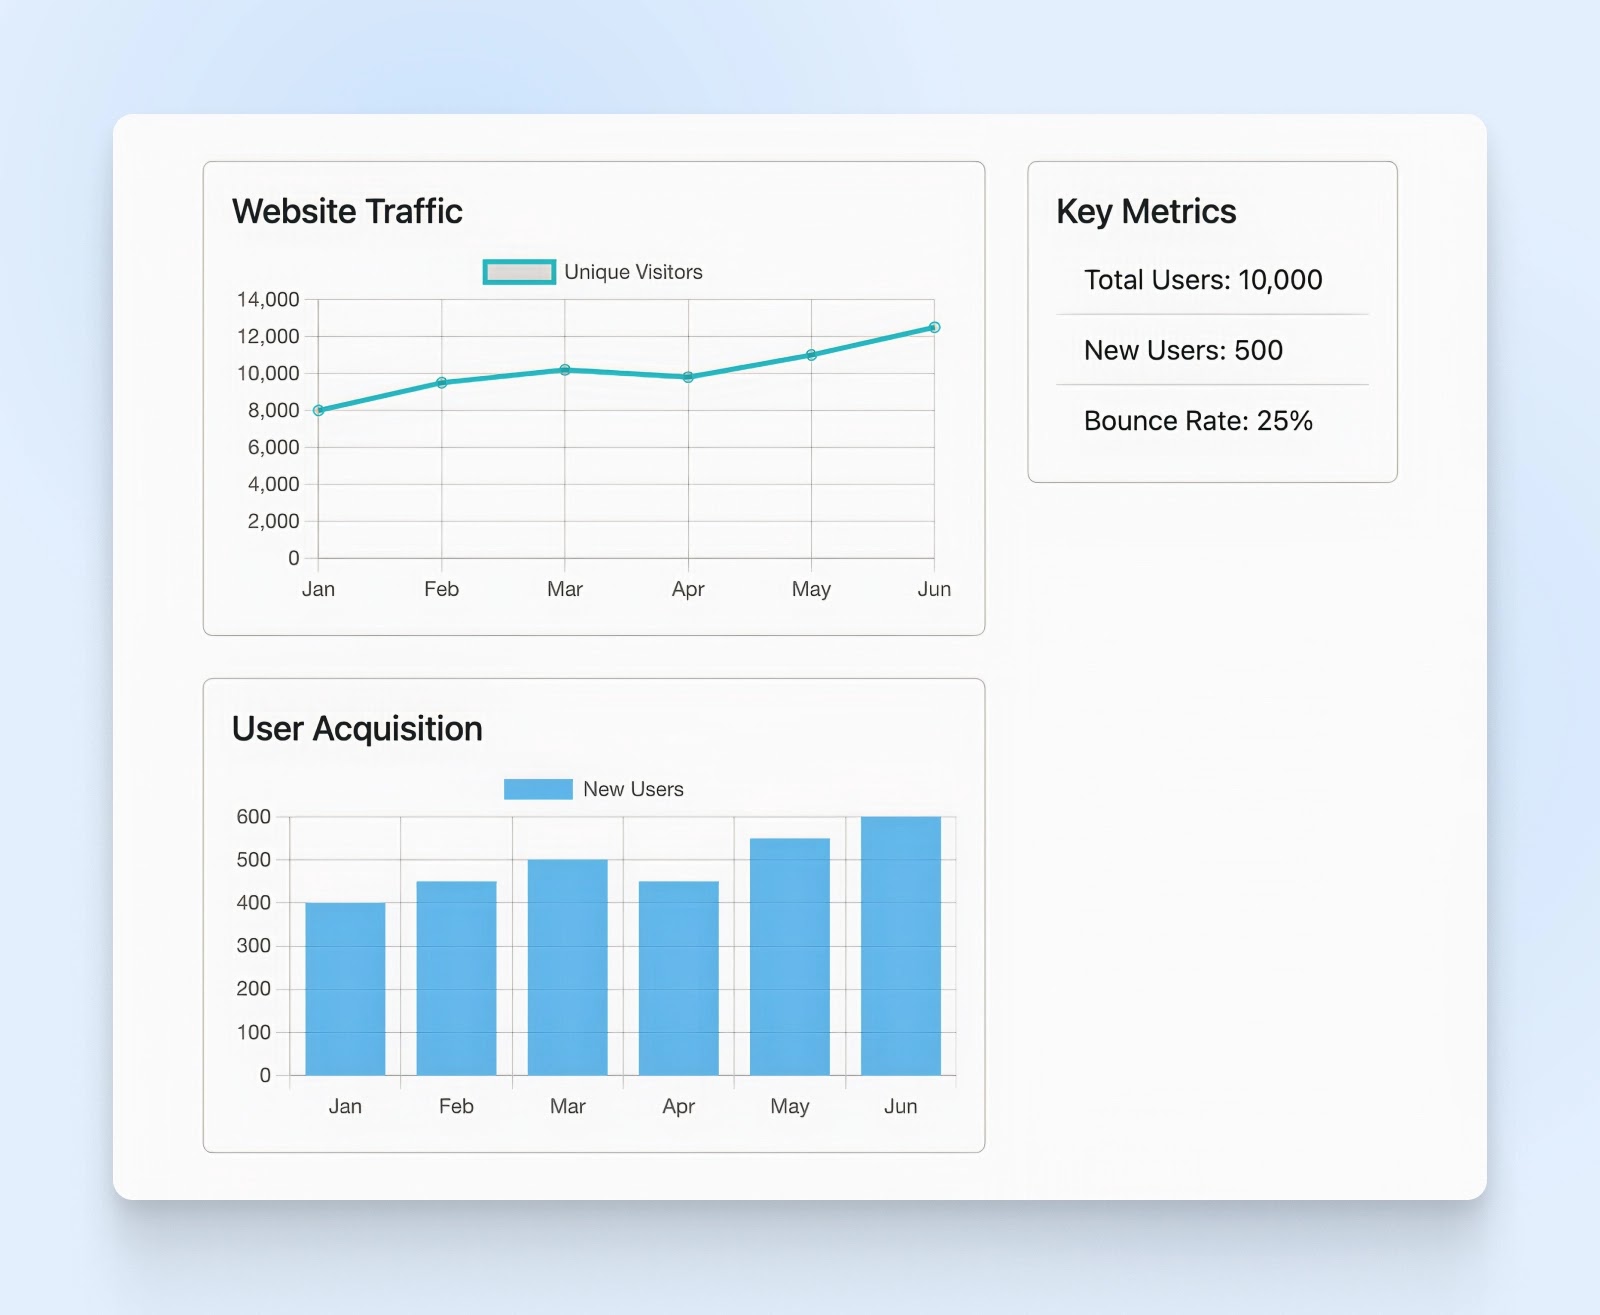 Panel con un gráfico de líneas para el tráfico del sitio web, un gráfico de barras para la adquisición de usuarios y métricas clave